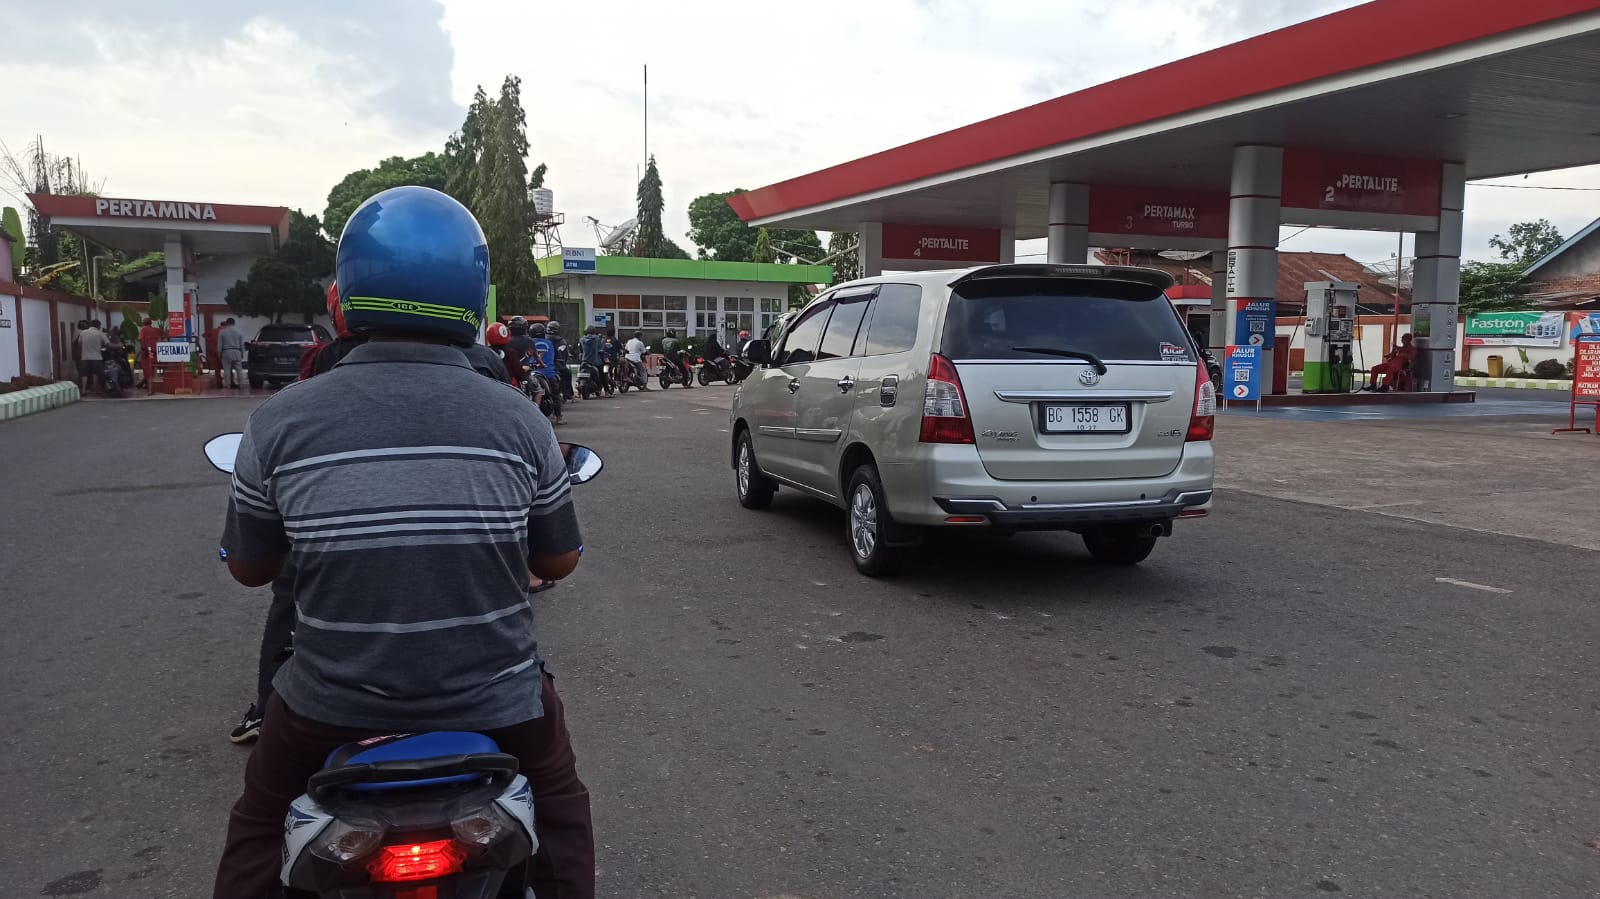 BBM Pertamina per 25 Desember Resmi Naik di Seluruh Indonesia, Cek di Sini Daftar Lengkapnya